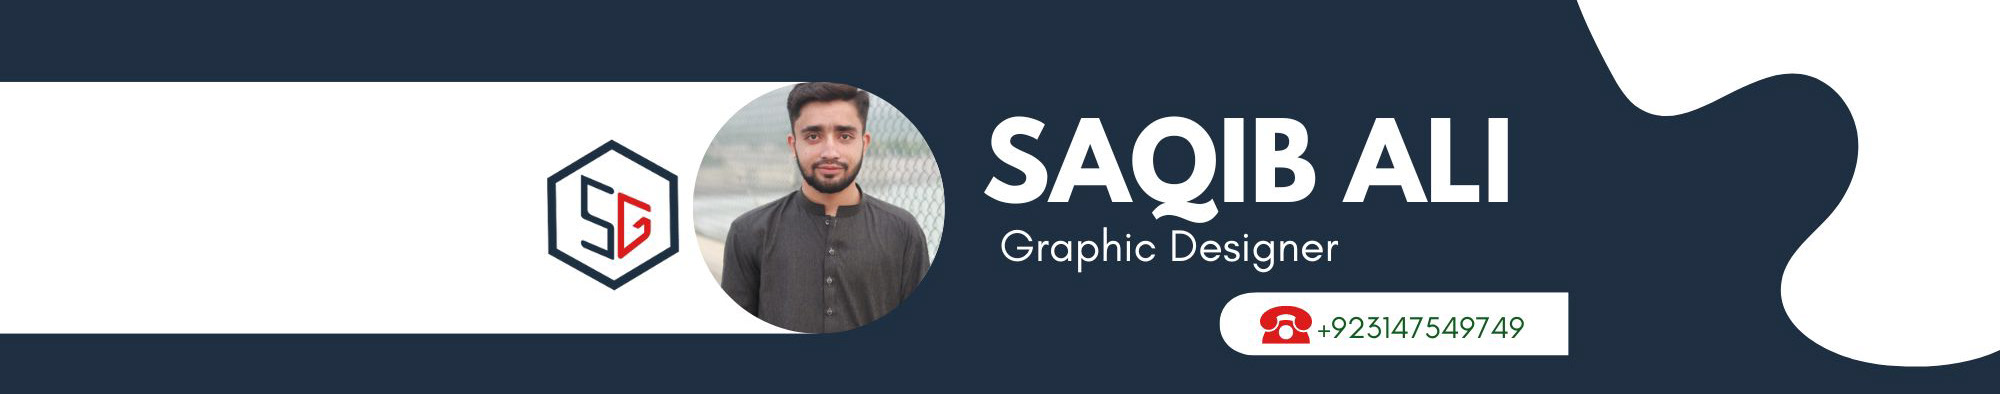 Bannière de profil de Saqib Graphic